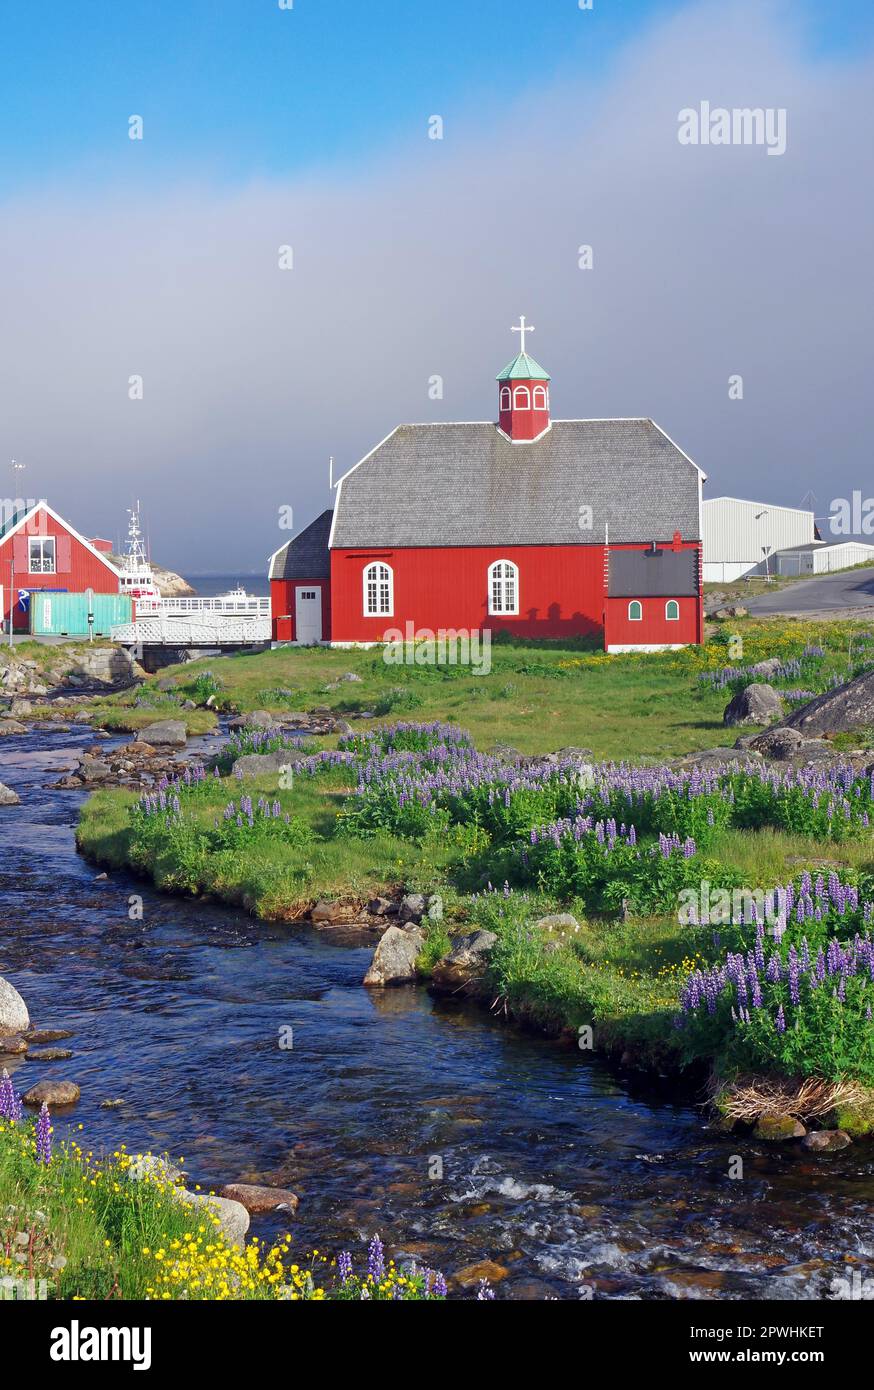 Kleiner Bach und Blumen, alte Kirche in Qaqortoq, Gemeinde Kujalleq, Arktis, Grönland, Dänemark Stockfoto